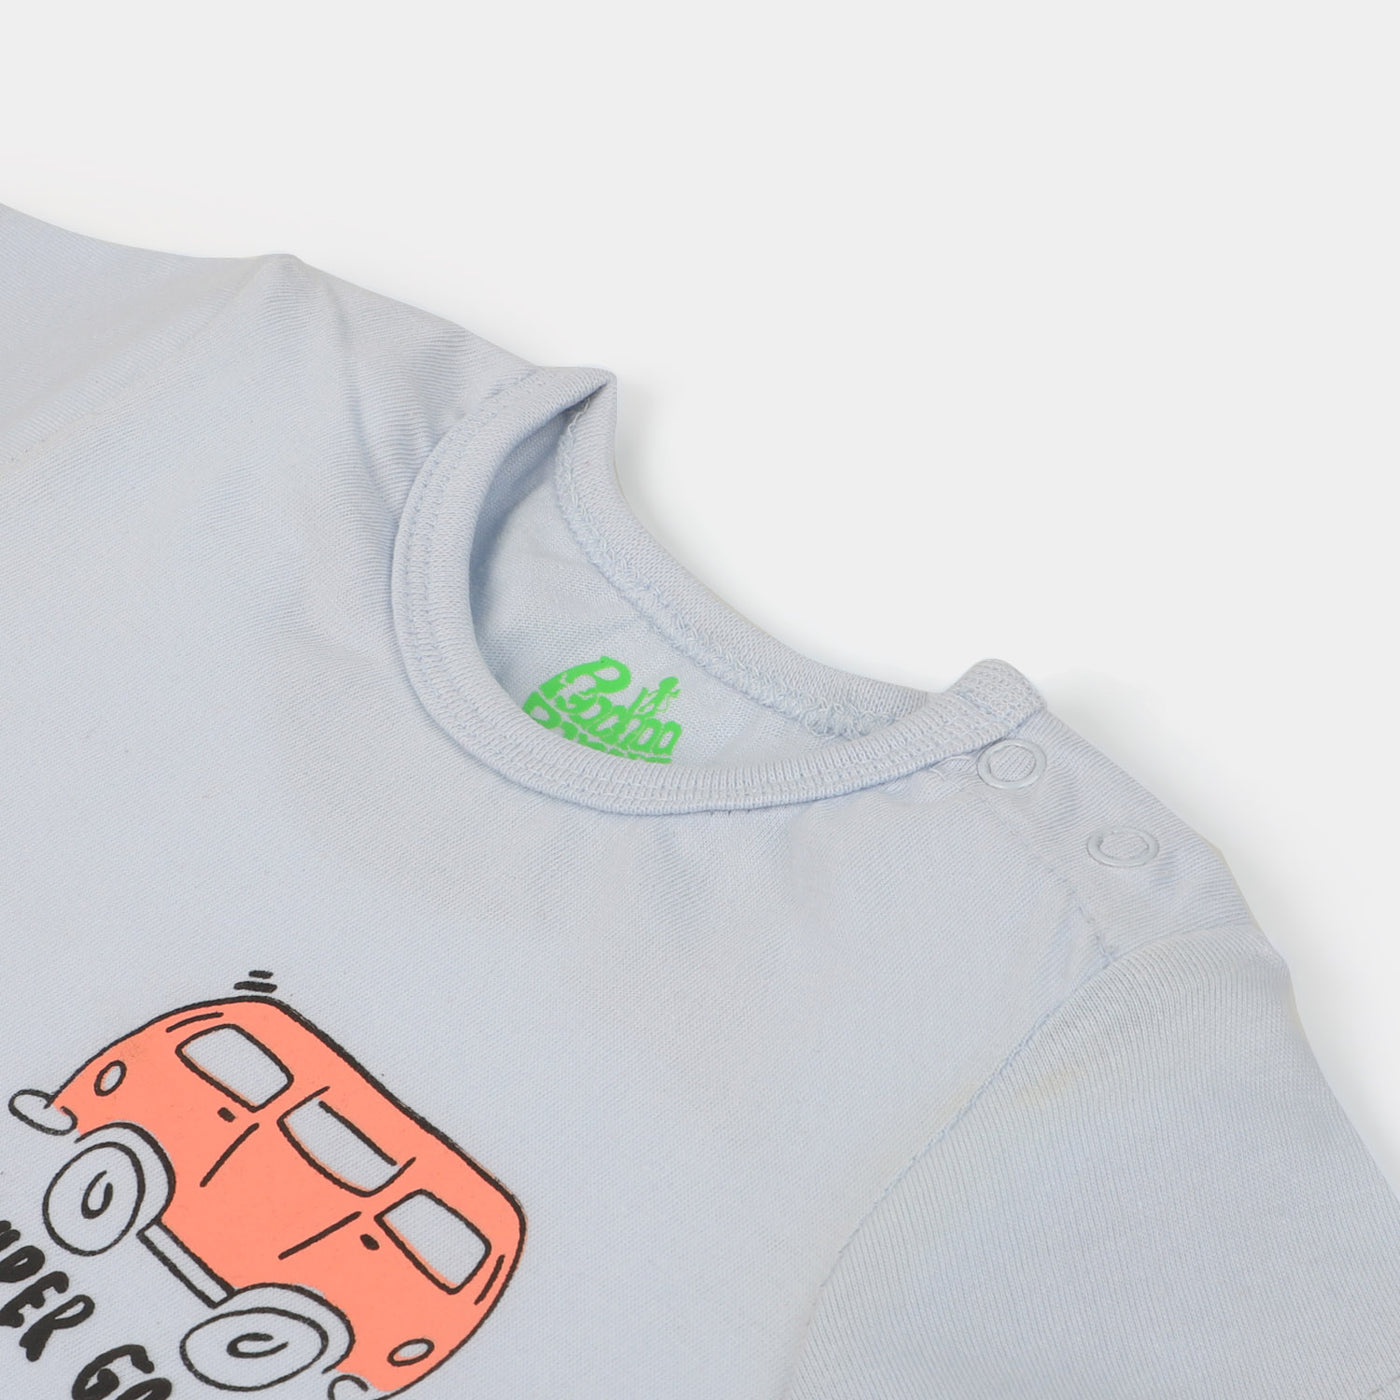 Infant Boys Cotton T-Shirt Super Good